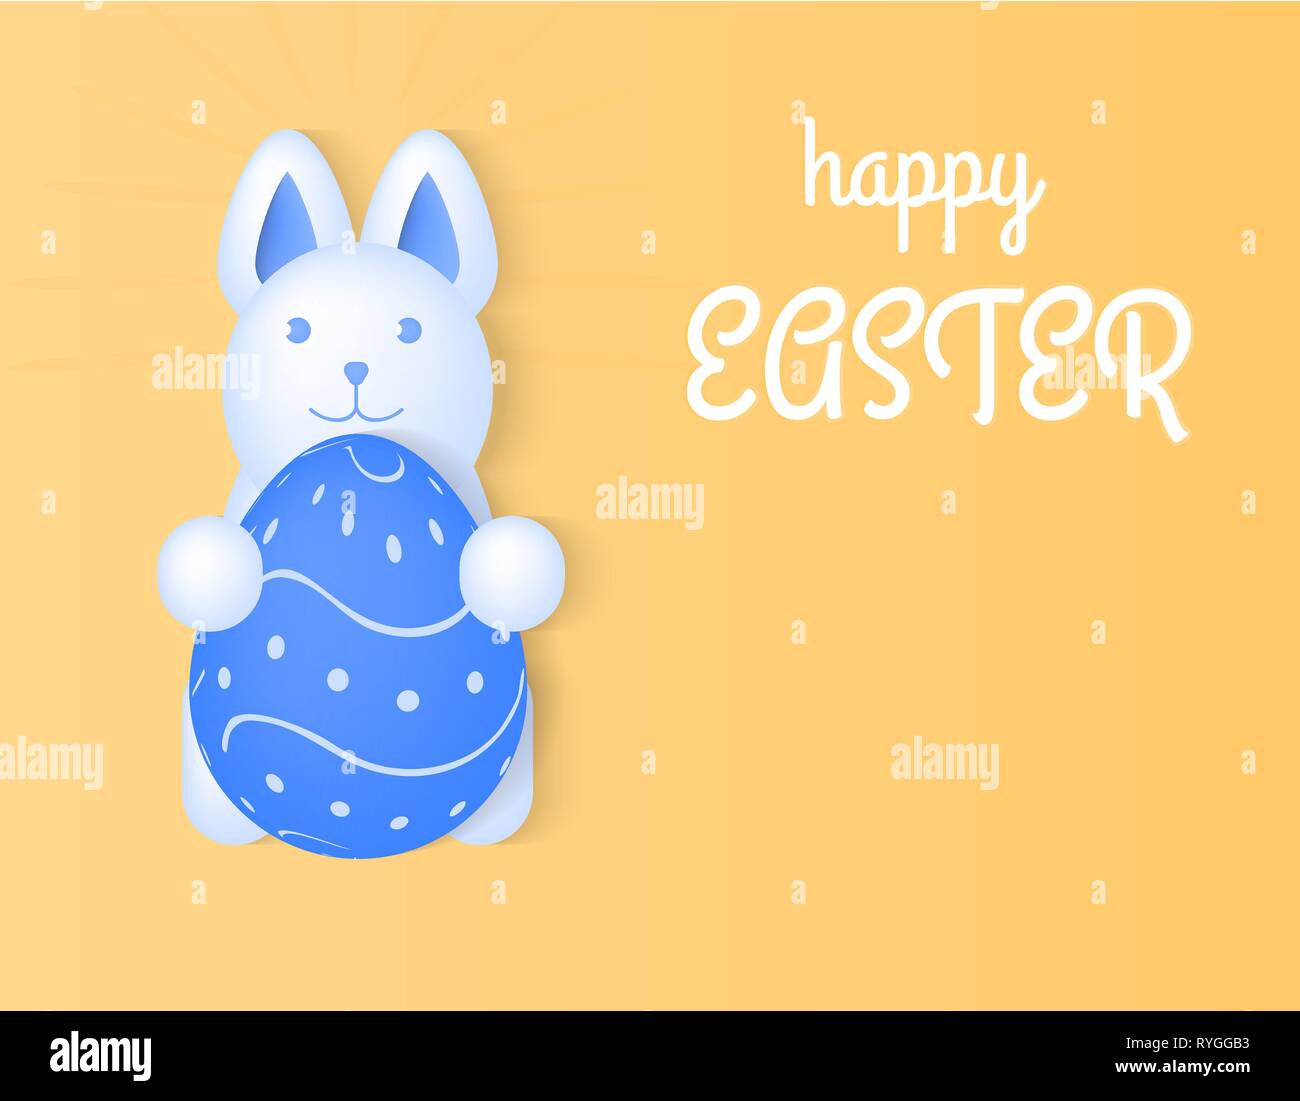 Happy Easter Bunny, illustration vectorielle, tenant un oeuf, la lumière fond jaune Illustration de Vecteur